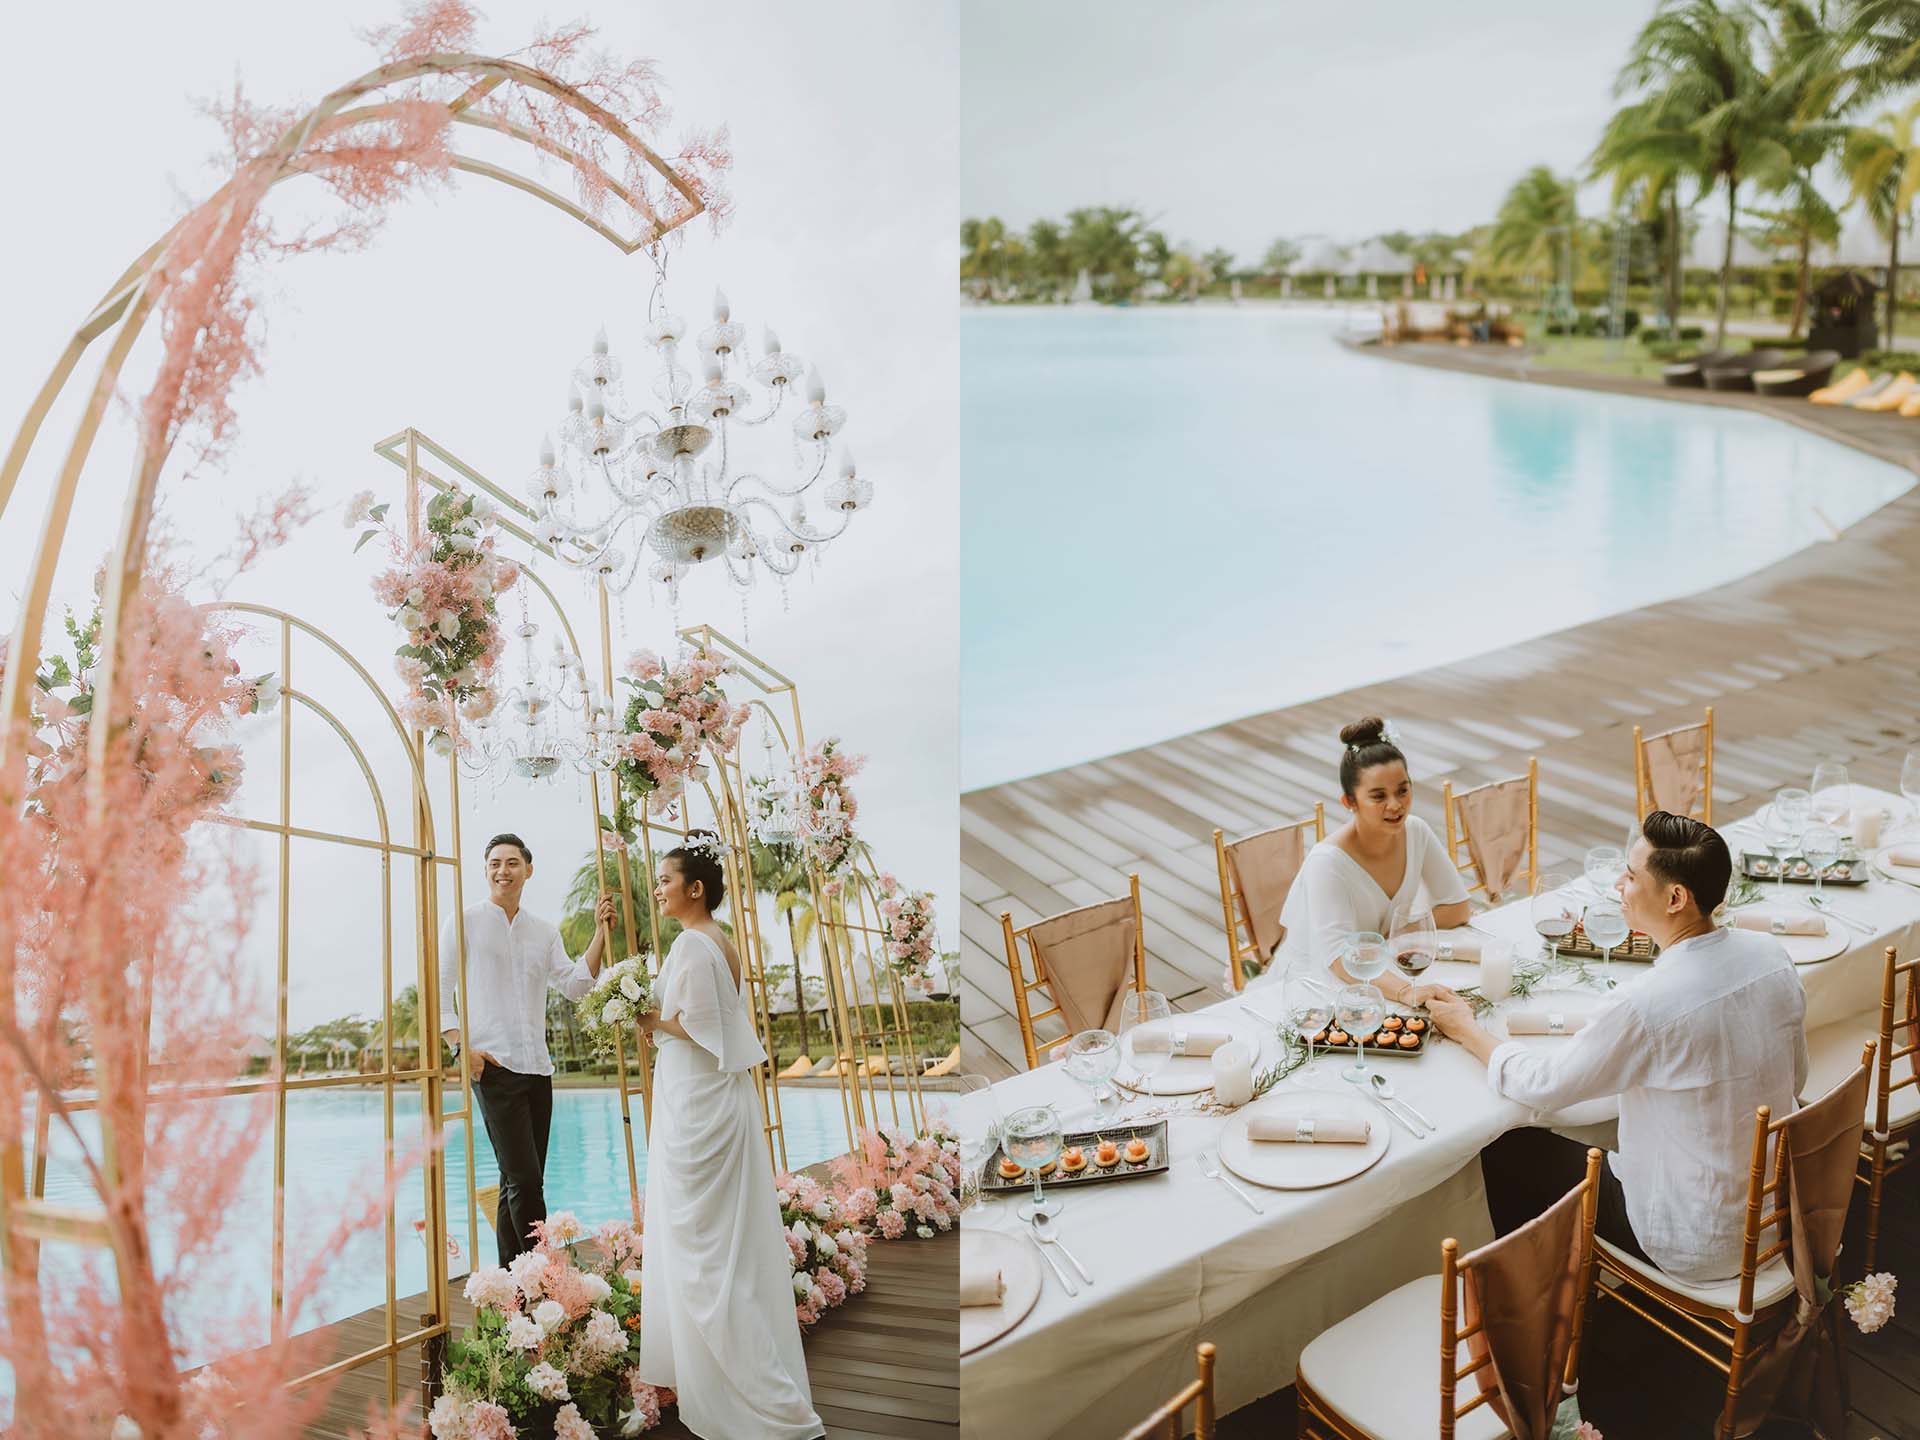 Resepsi pernikahan di kolam renang terbesar di Asia Tenggara